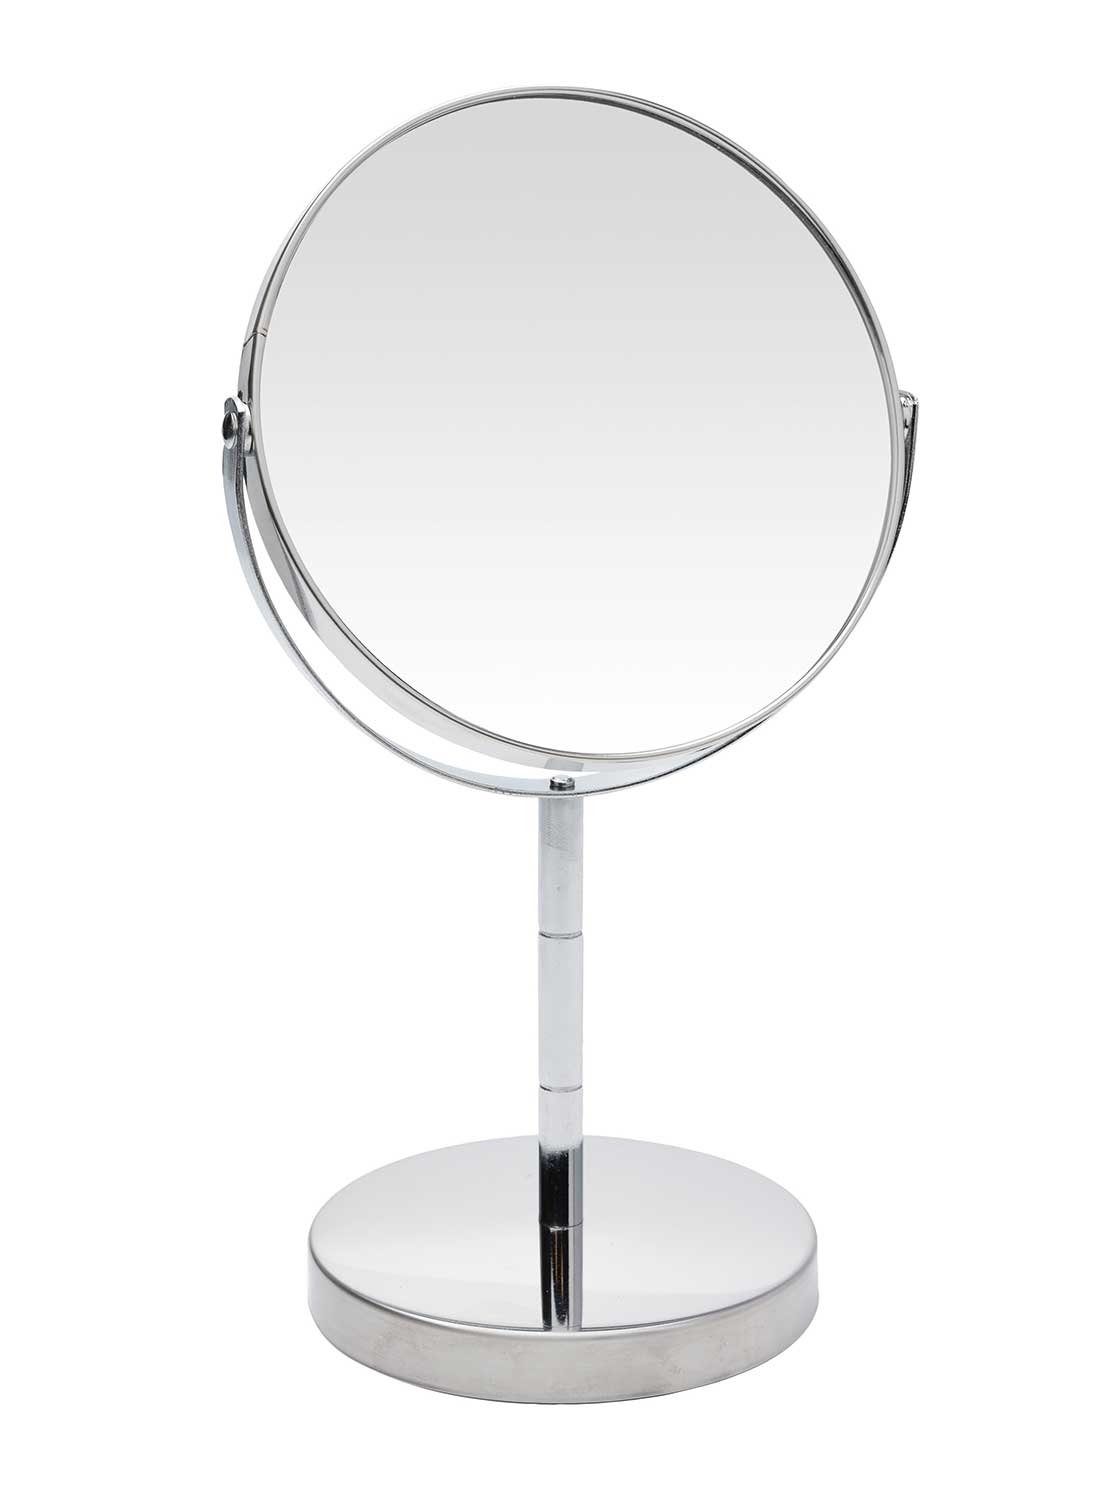 Kosmetikspiegel PERFETTO, Silberfarben, H 26,5 cm, Edelstahl, mit 2-facher Vergrößerung, dreh- und schwenkbar